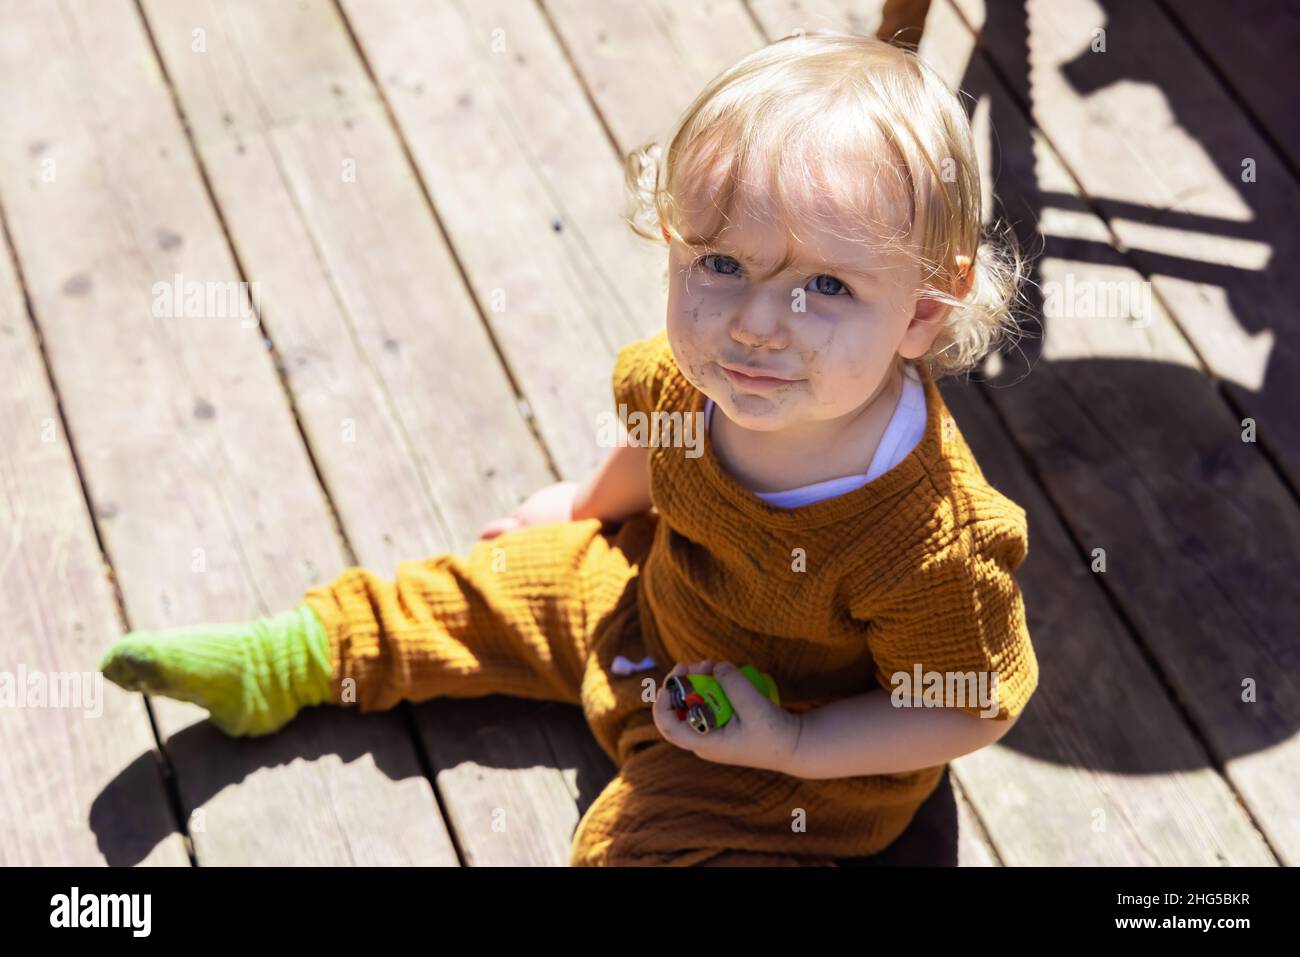 Blick aus der Perspektive eines dreijährigen, schelmischen Kleinkindes, das auf einer Holzterrasse sitzt und Feuerzeuge mit einem schmutzigen Gesicht hält, nachdem es im Hinterhof gespielt hat. Stockfoto